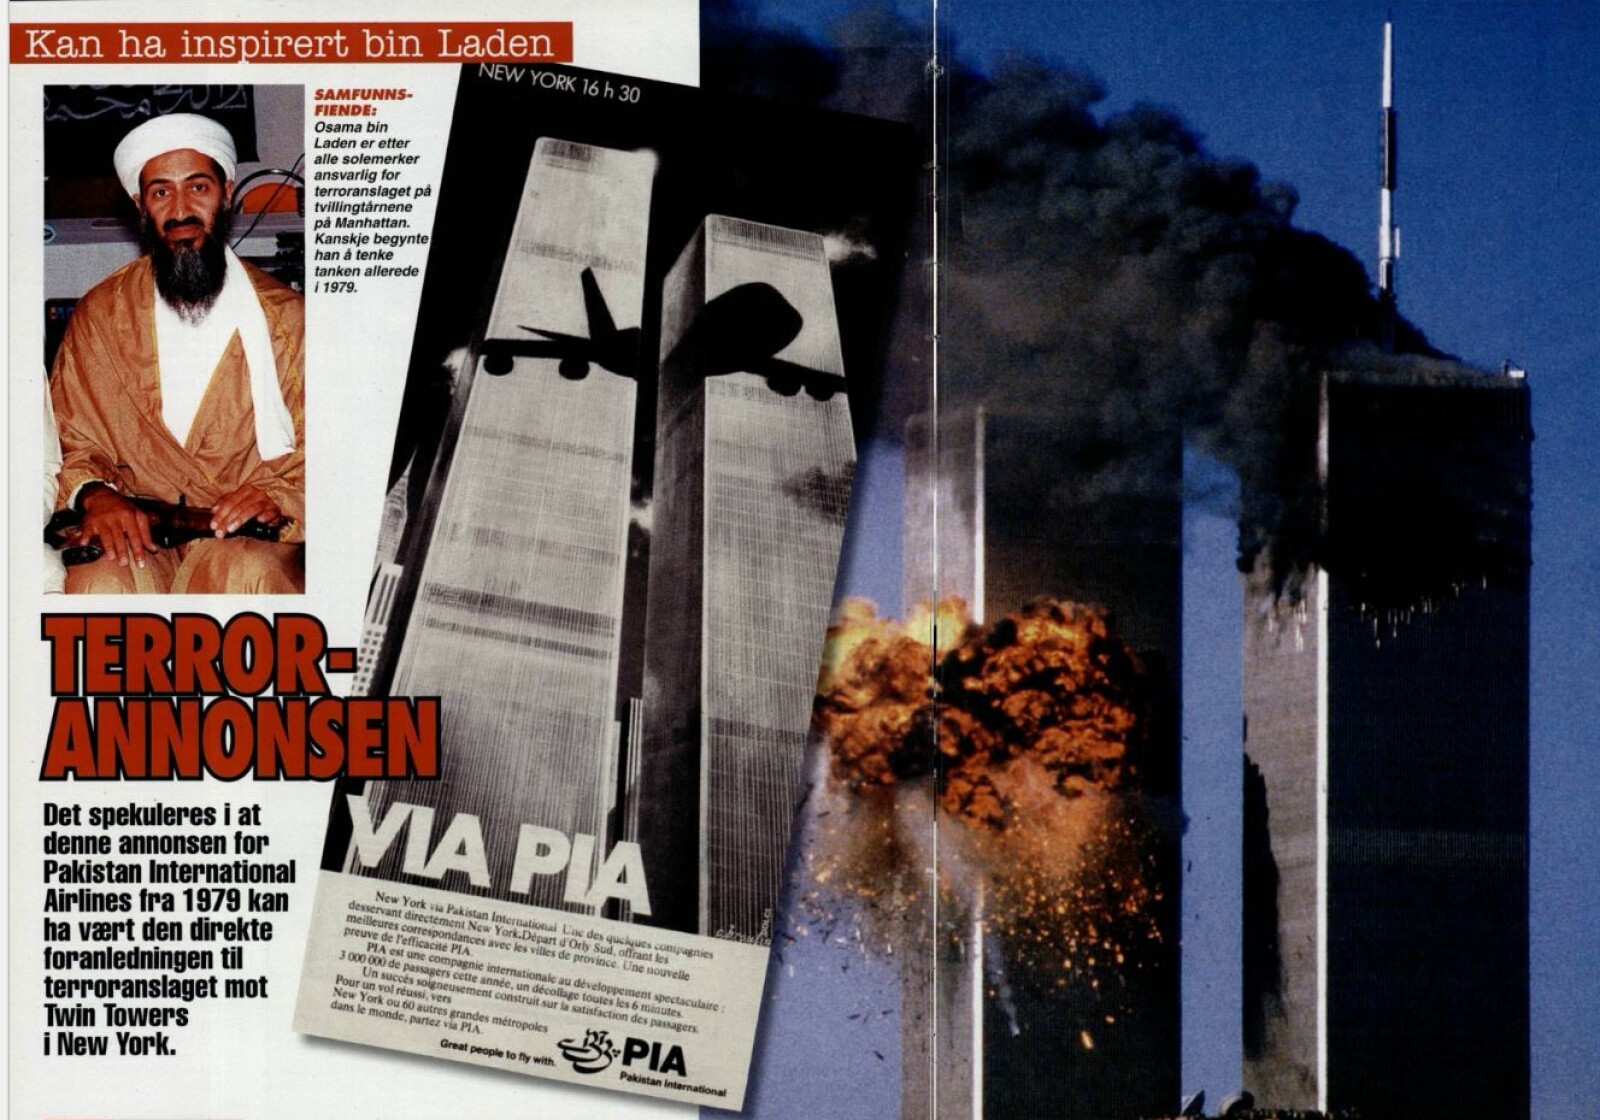 <b>INSPIRASJONSKILDEN:</b> Flere hevdet at Osama bin Laden kunne ha blitt inspirert av en annonse fra Pakistan International Airlines, PIA.